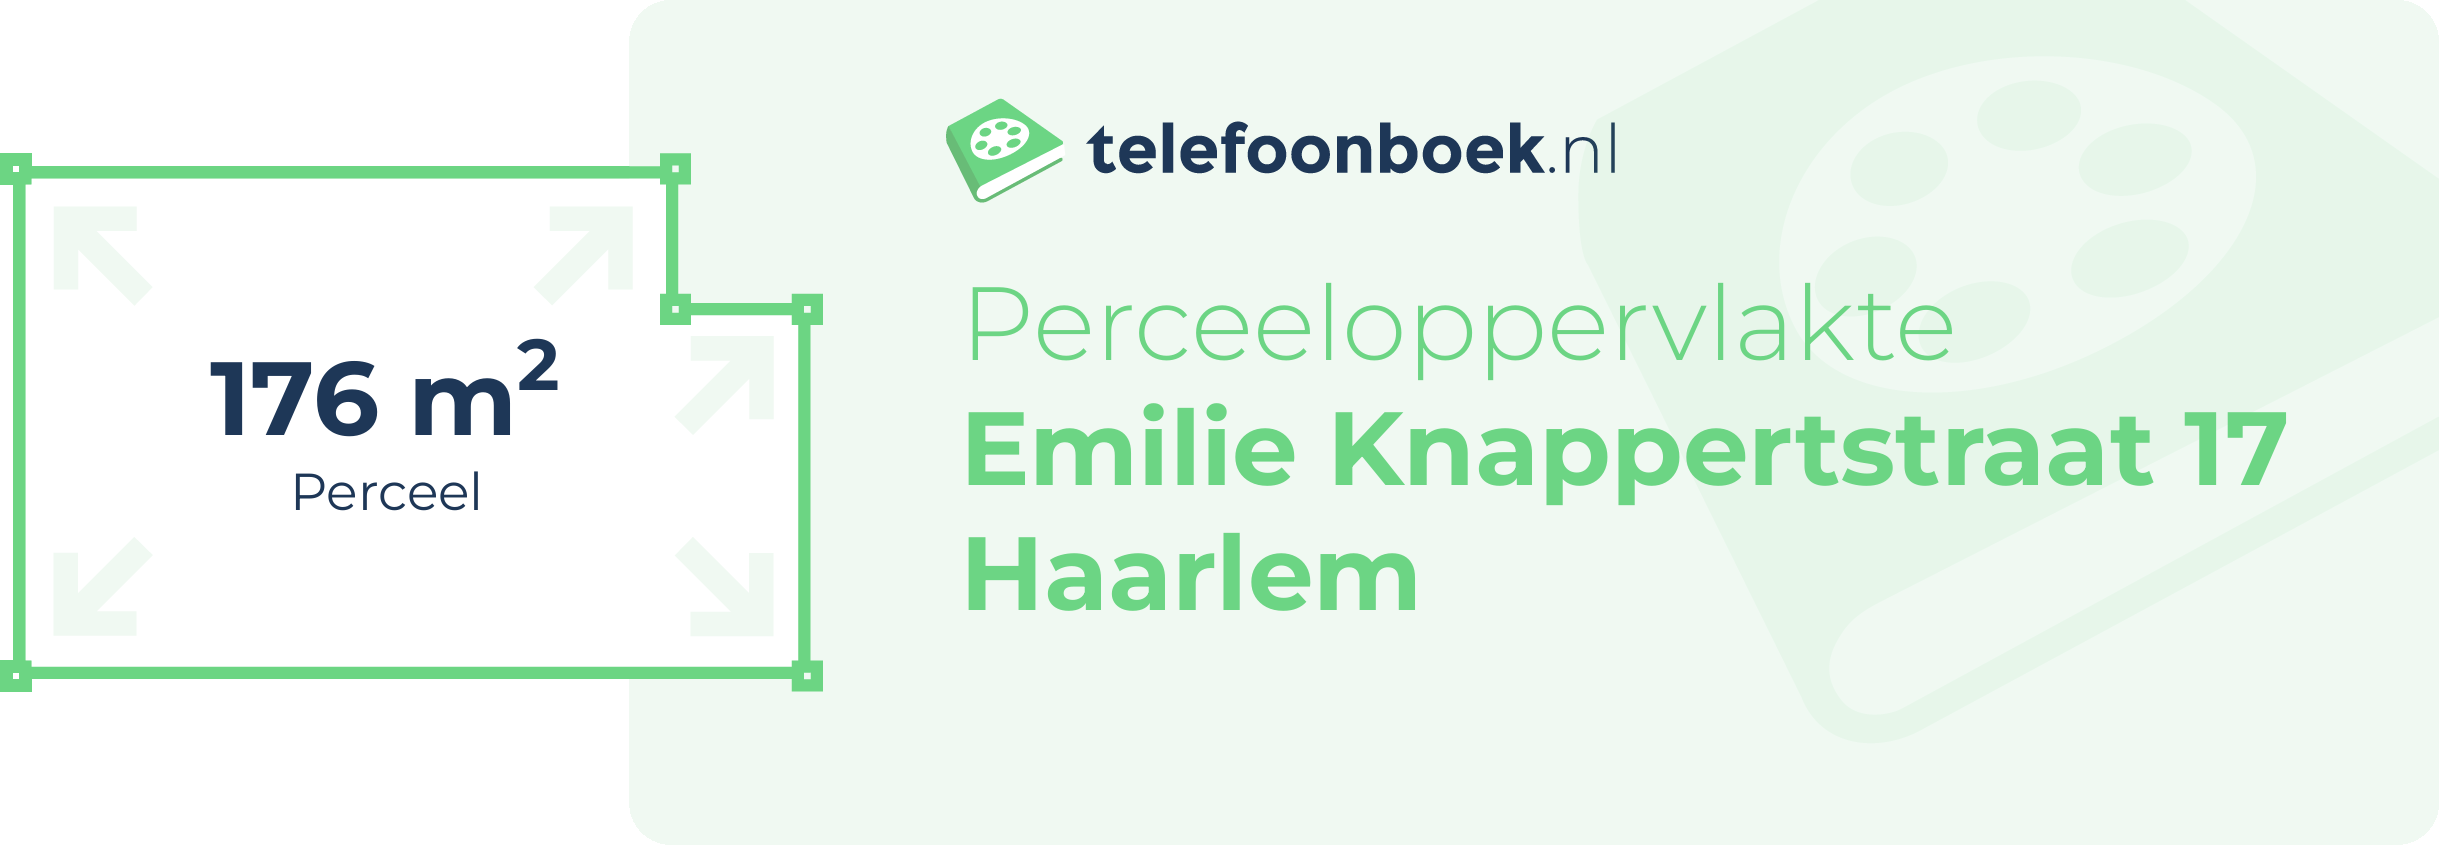 Perceeloppervlakte Emilie Knappertstraat 17 Haarlem